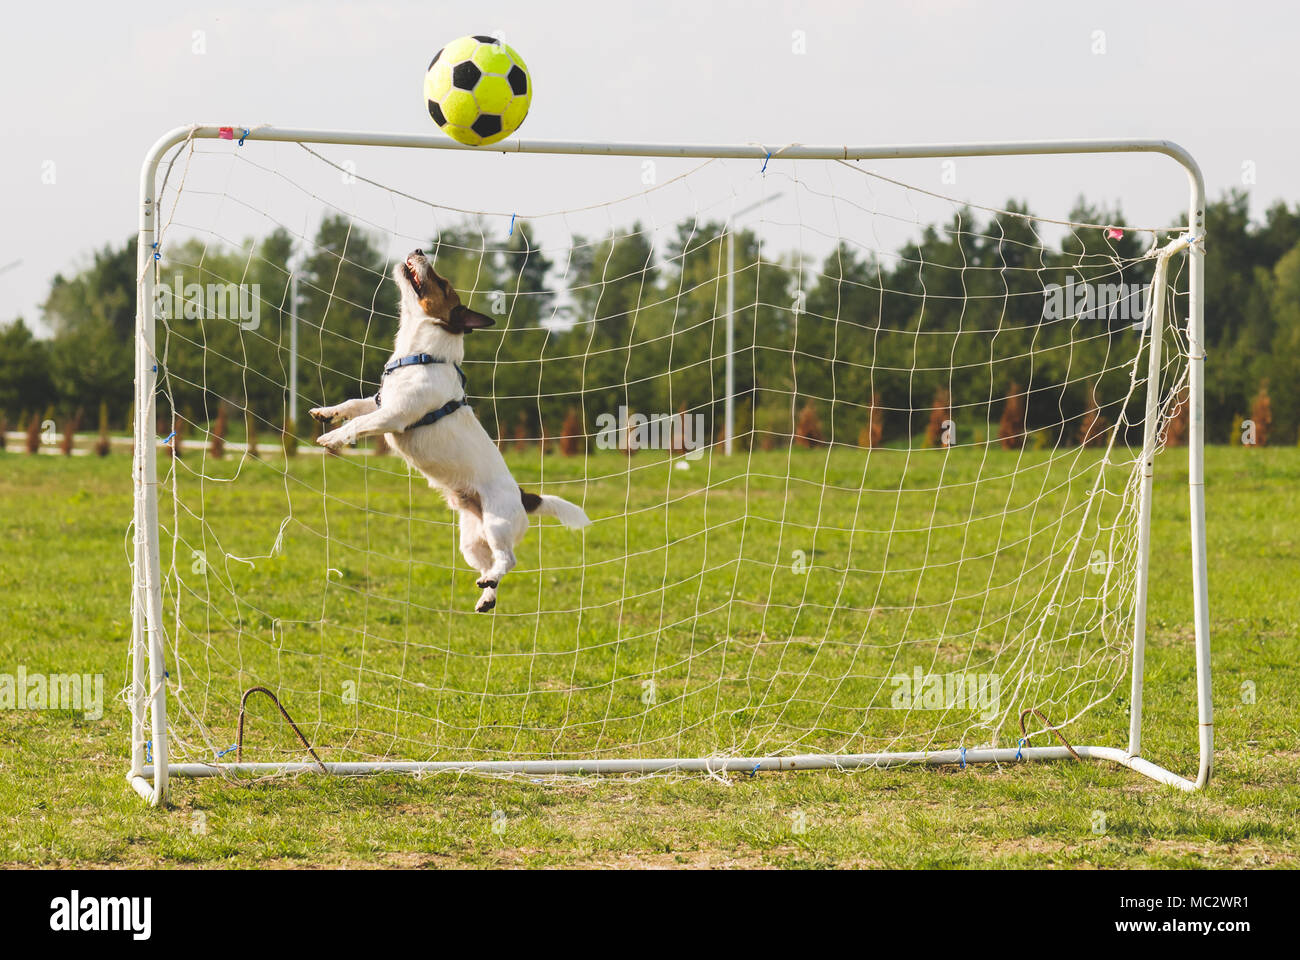 Gioco del calcio (calcio) palla colpisce la traversa mentre funny keeper jumping per salvare obiettivo Foto Stock